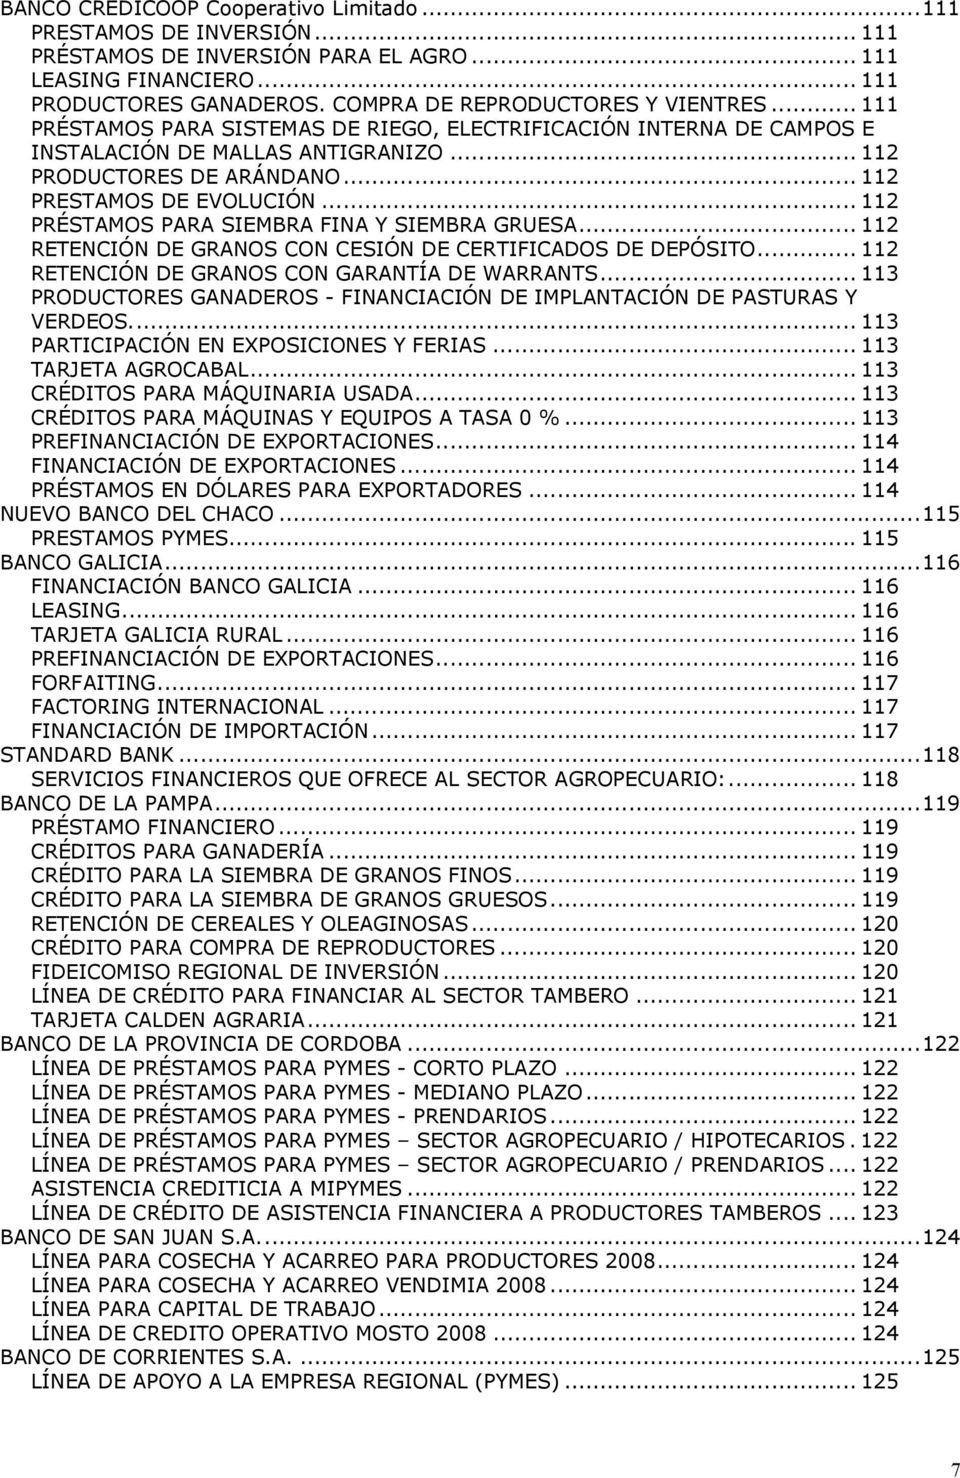 .. 112 PRÉSTAMOS PARA SIEMBRA FINA Y SIEMBRA GRUESA... 112 RETENCIÓN DE GRANOS CON CESIÓN DE CERTIFICADOS DE DEPÓSITO... 112 RETENCIÓN DE GRANOS CON GARANTÍA DE WARRANTS.